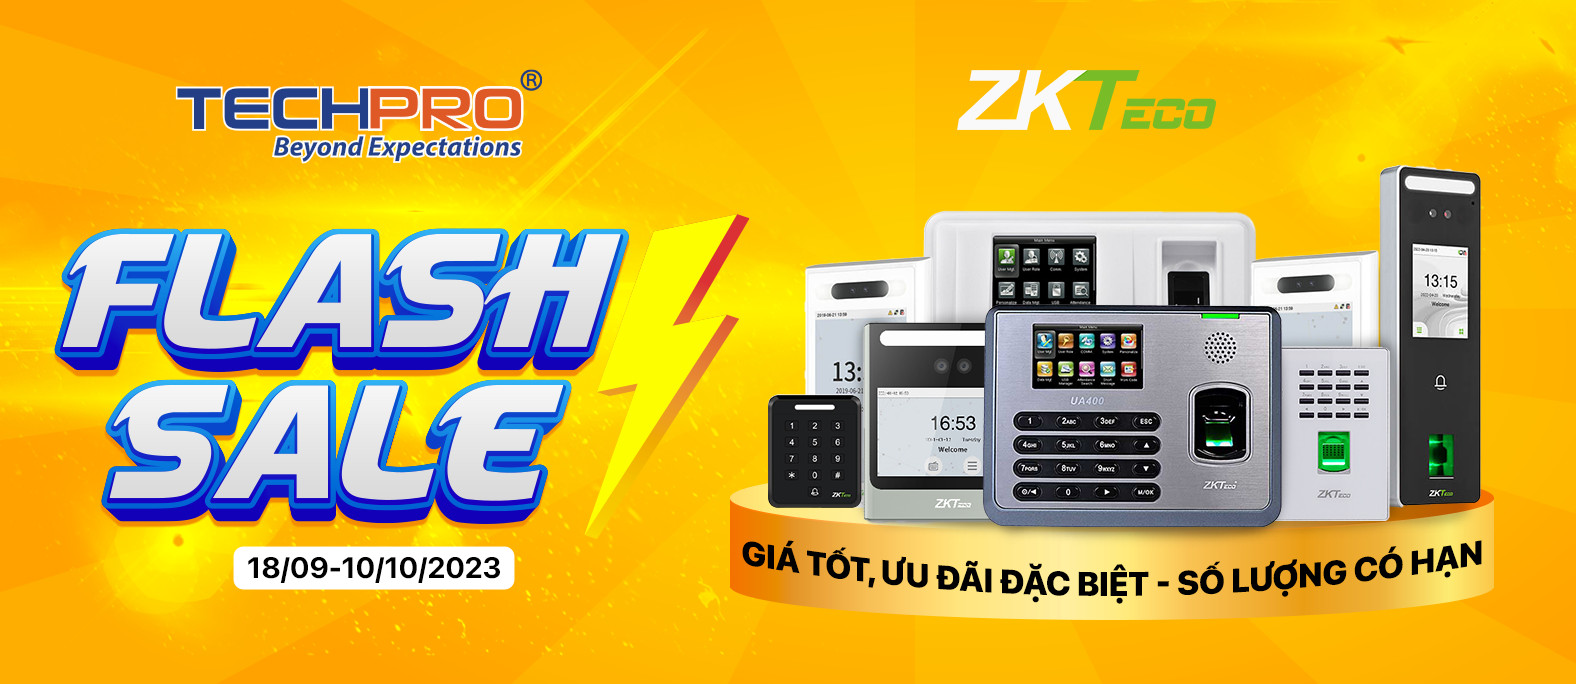 Flash sale Thiết bị ZKTECO - Giá tốt, ưu đãi đặc biệt, số lượng có hạn